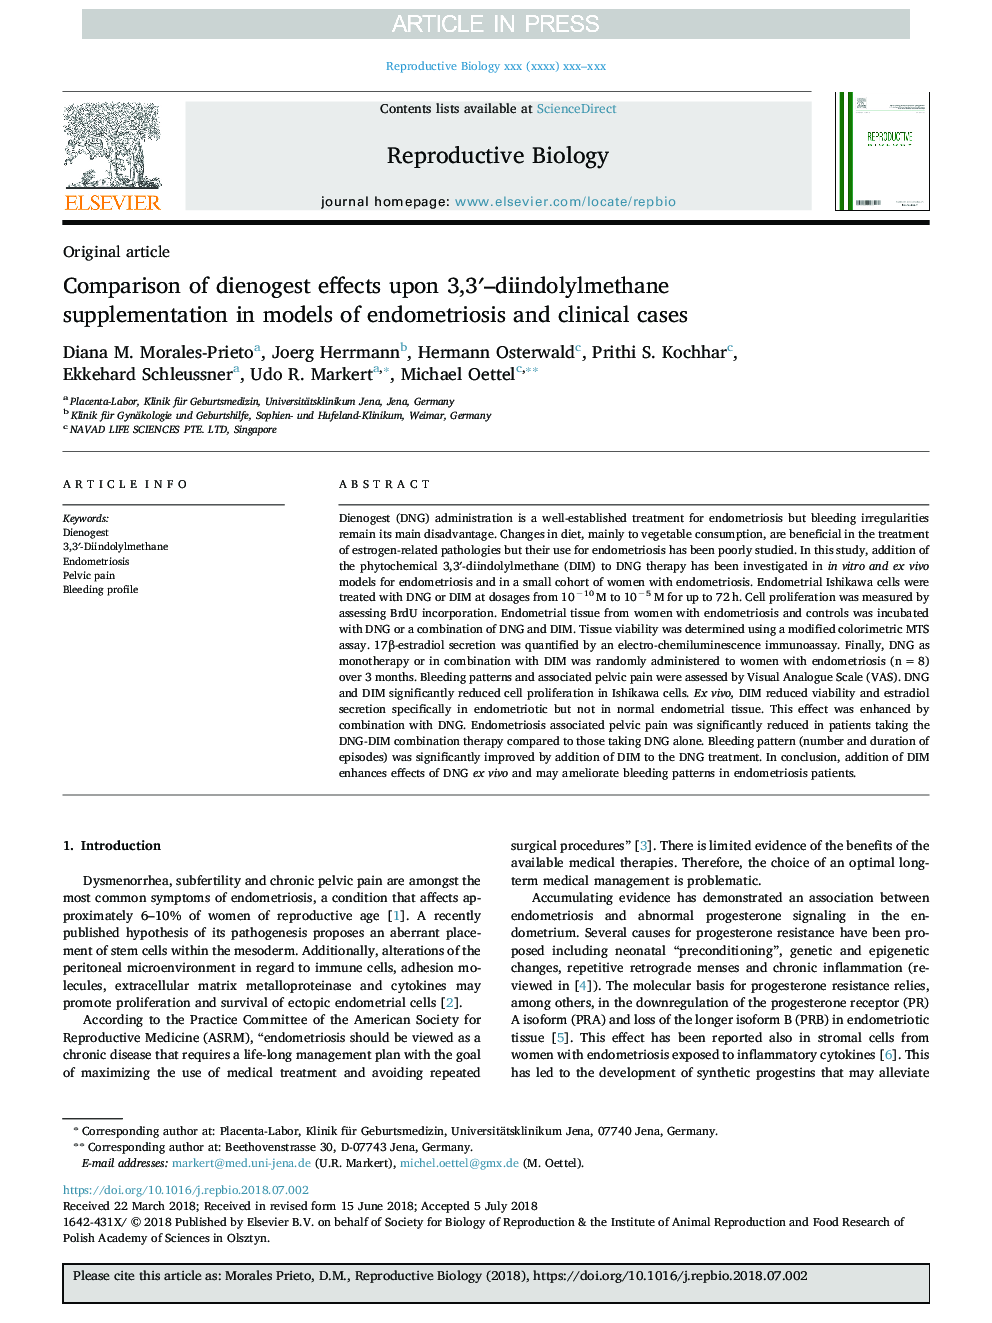 Comparison of dienogest effects upon 3,3â²-diindolylmethane supplementation in models of endometriosis and clinical cases